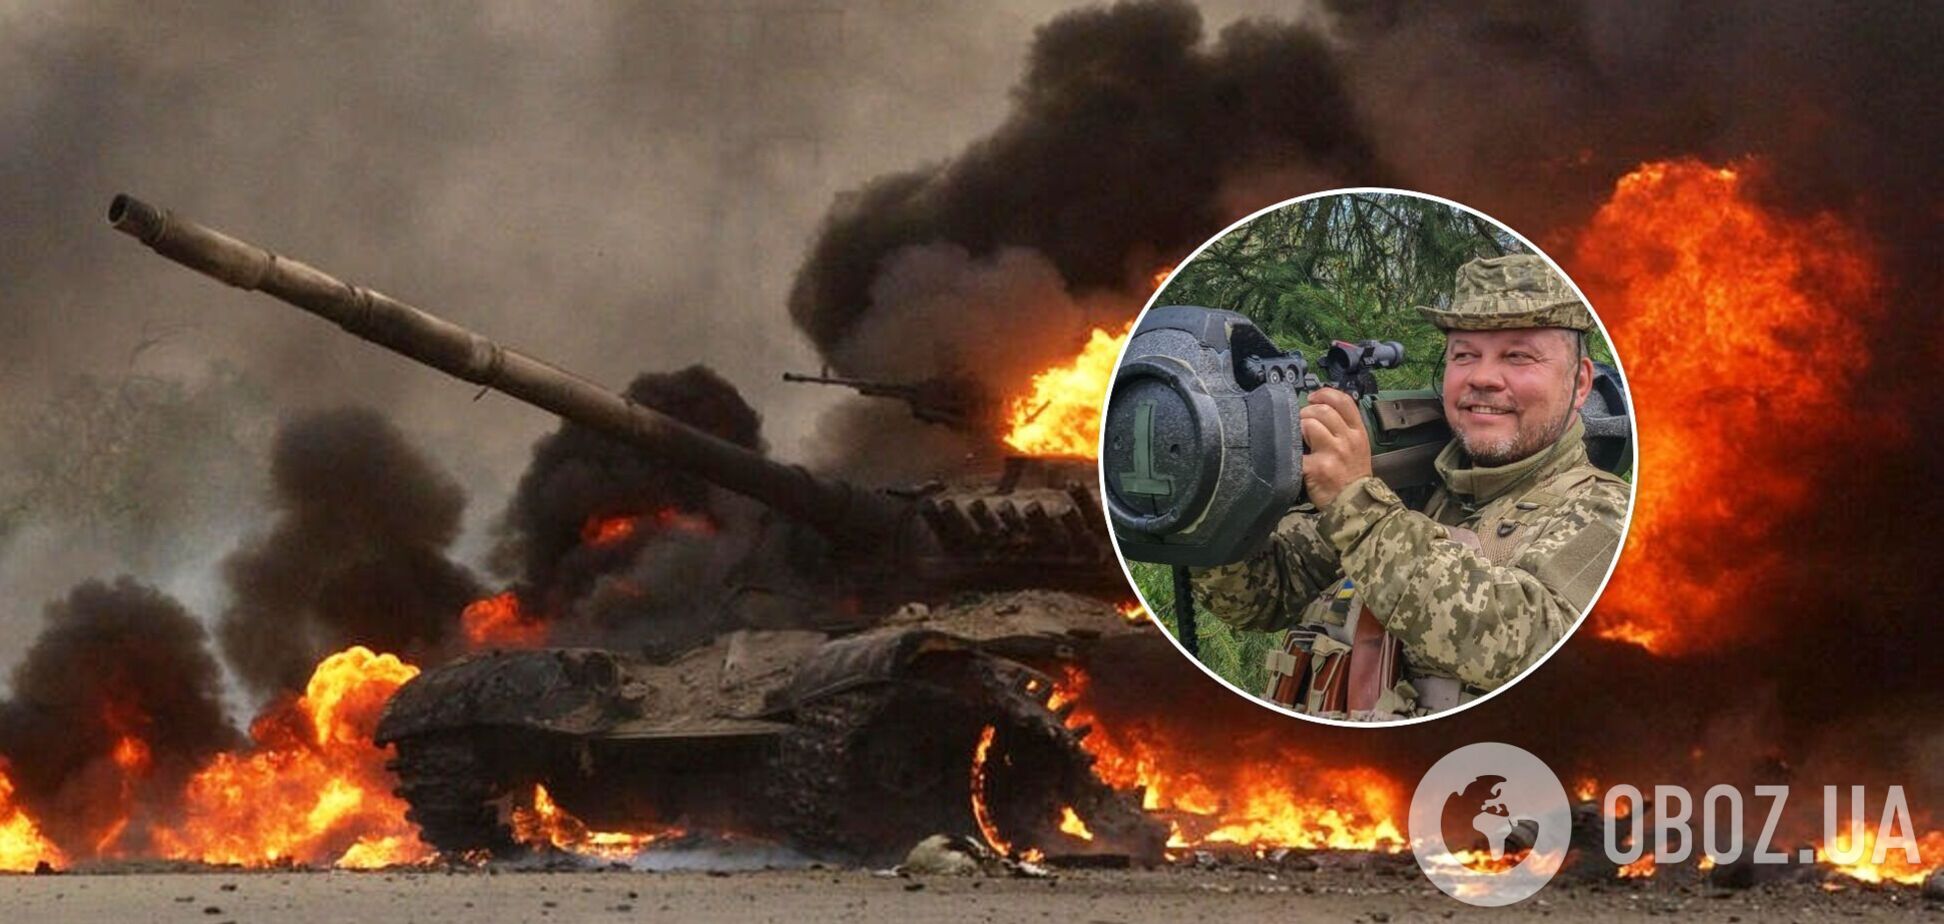 Боец ВСУ с позывным 'Афганец' при защите Чернигова сжег два вражеских танка. Фото